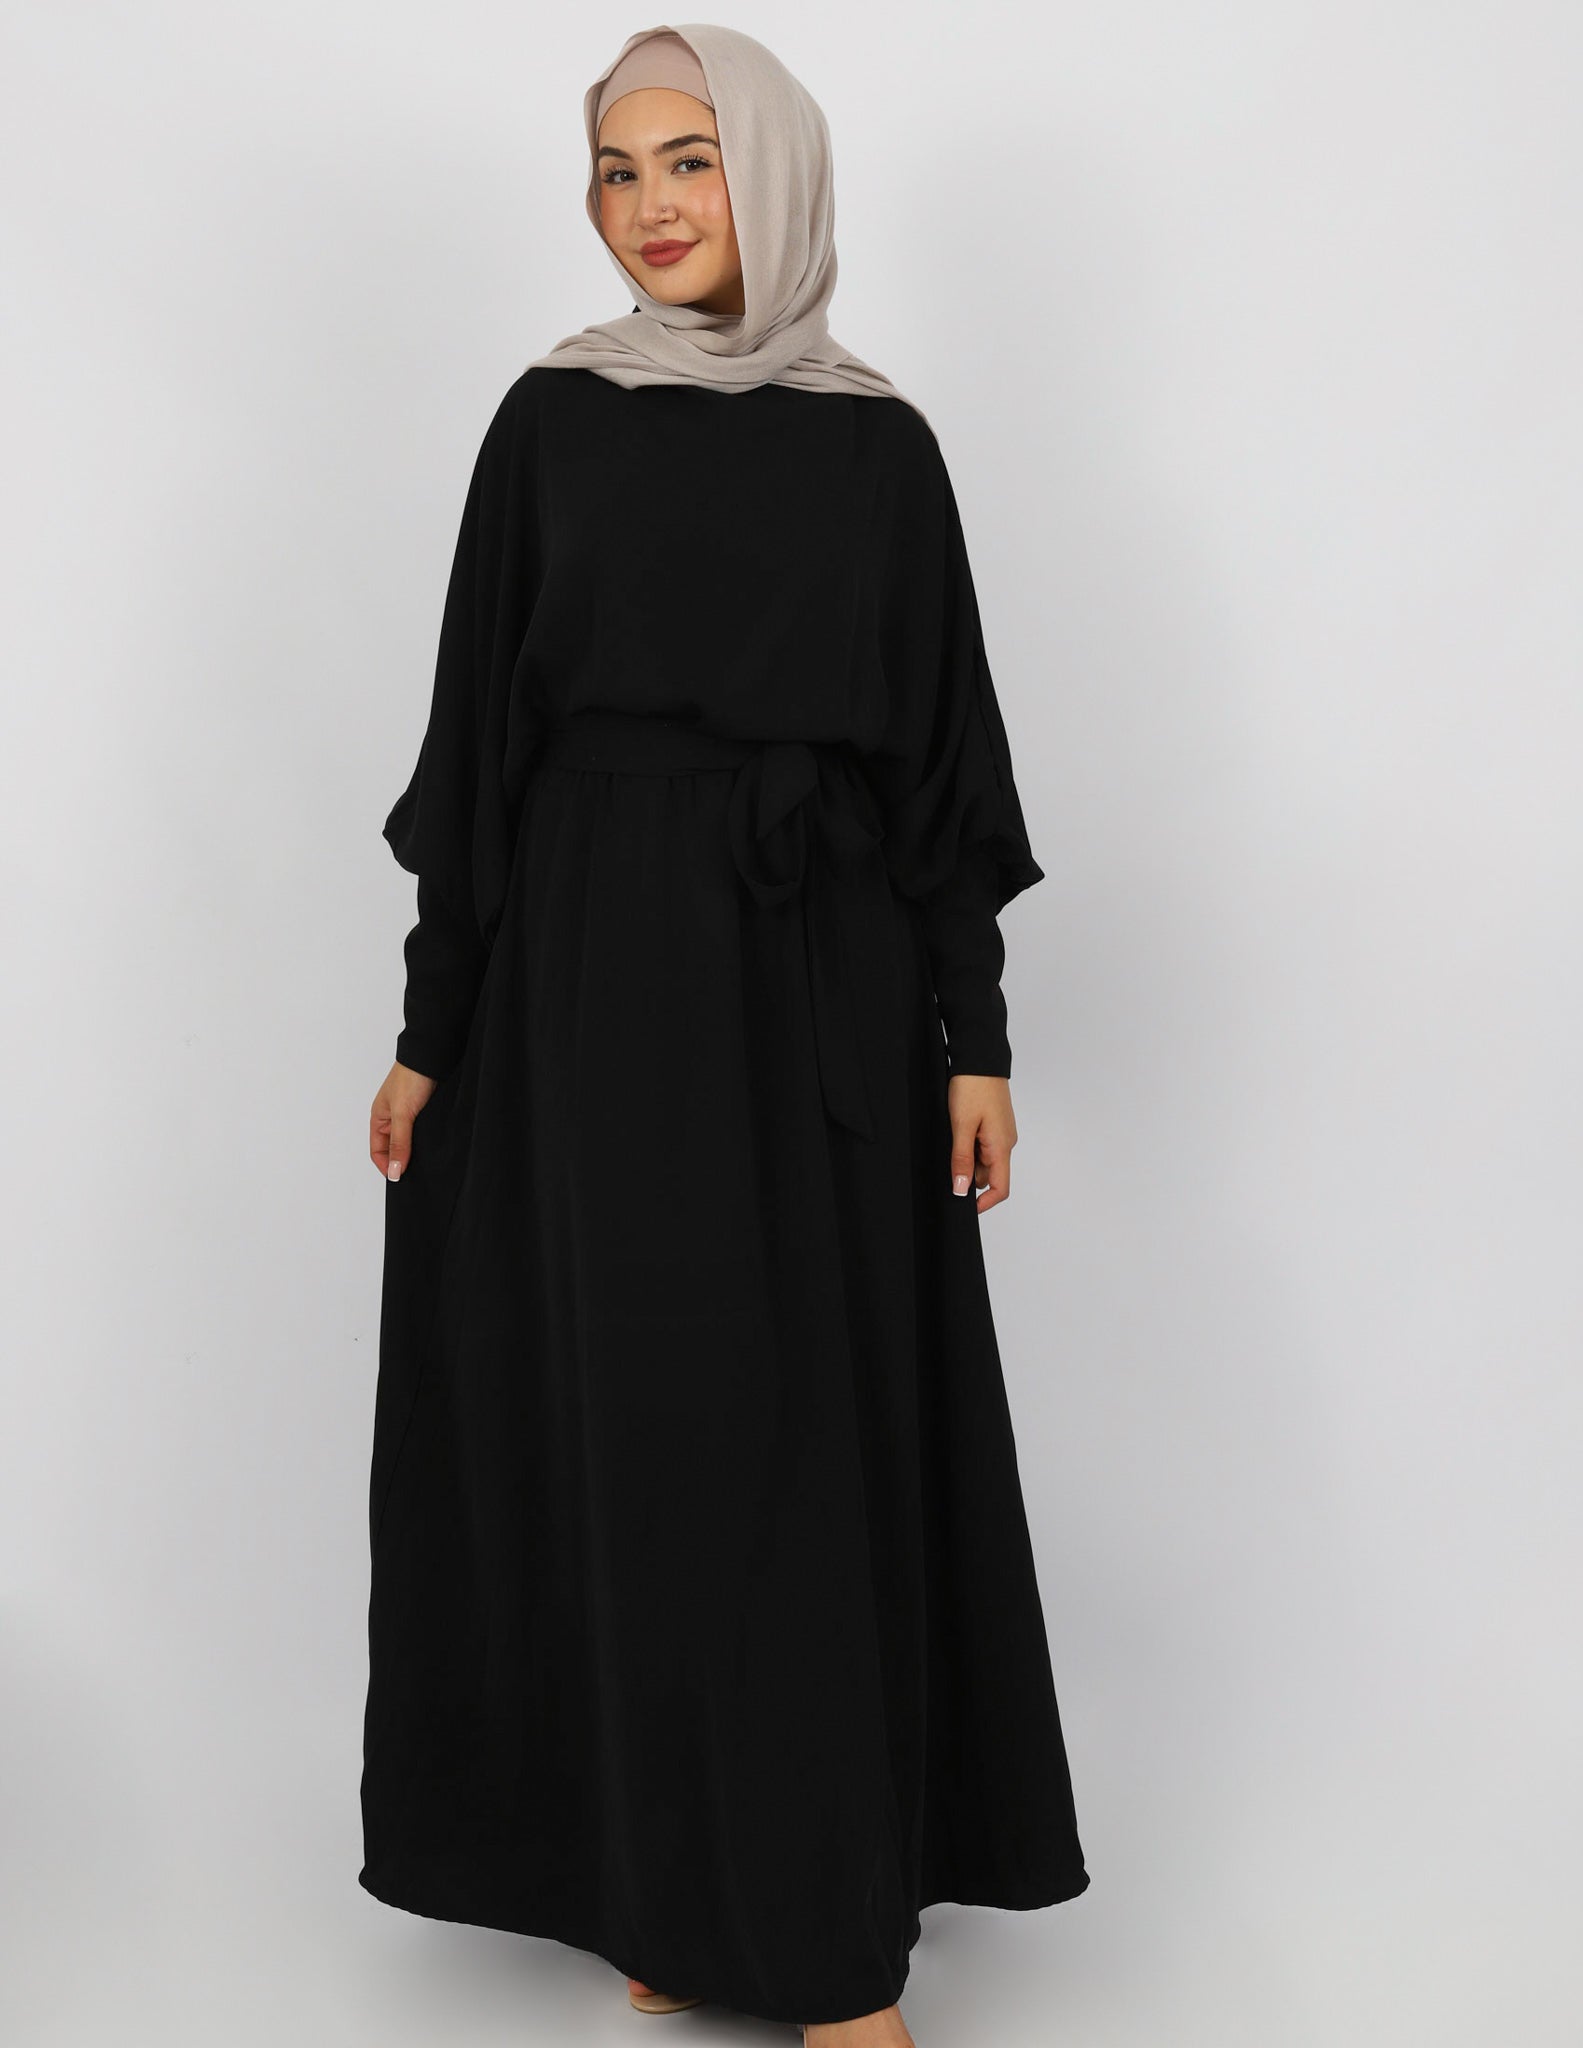 M7814Black-dress-abaya